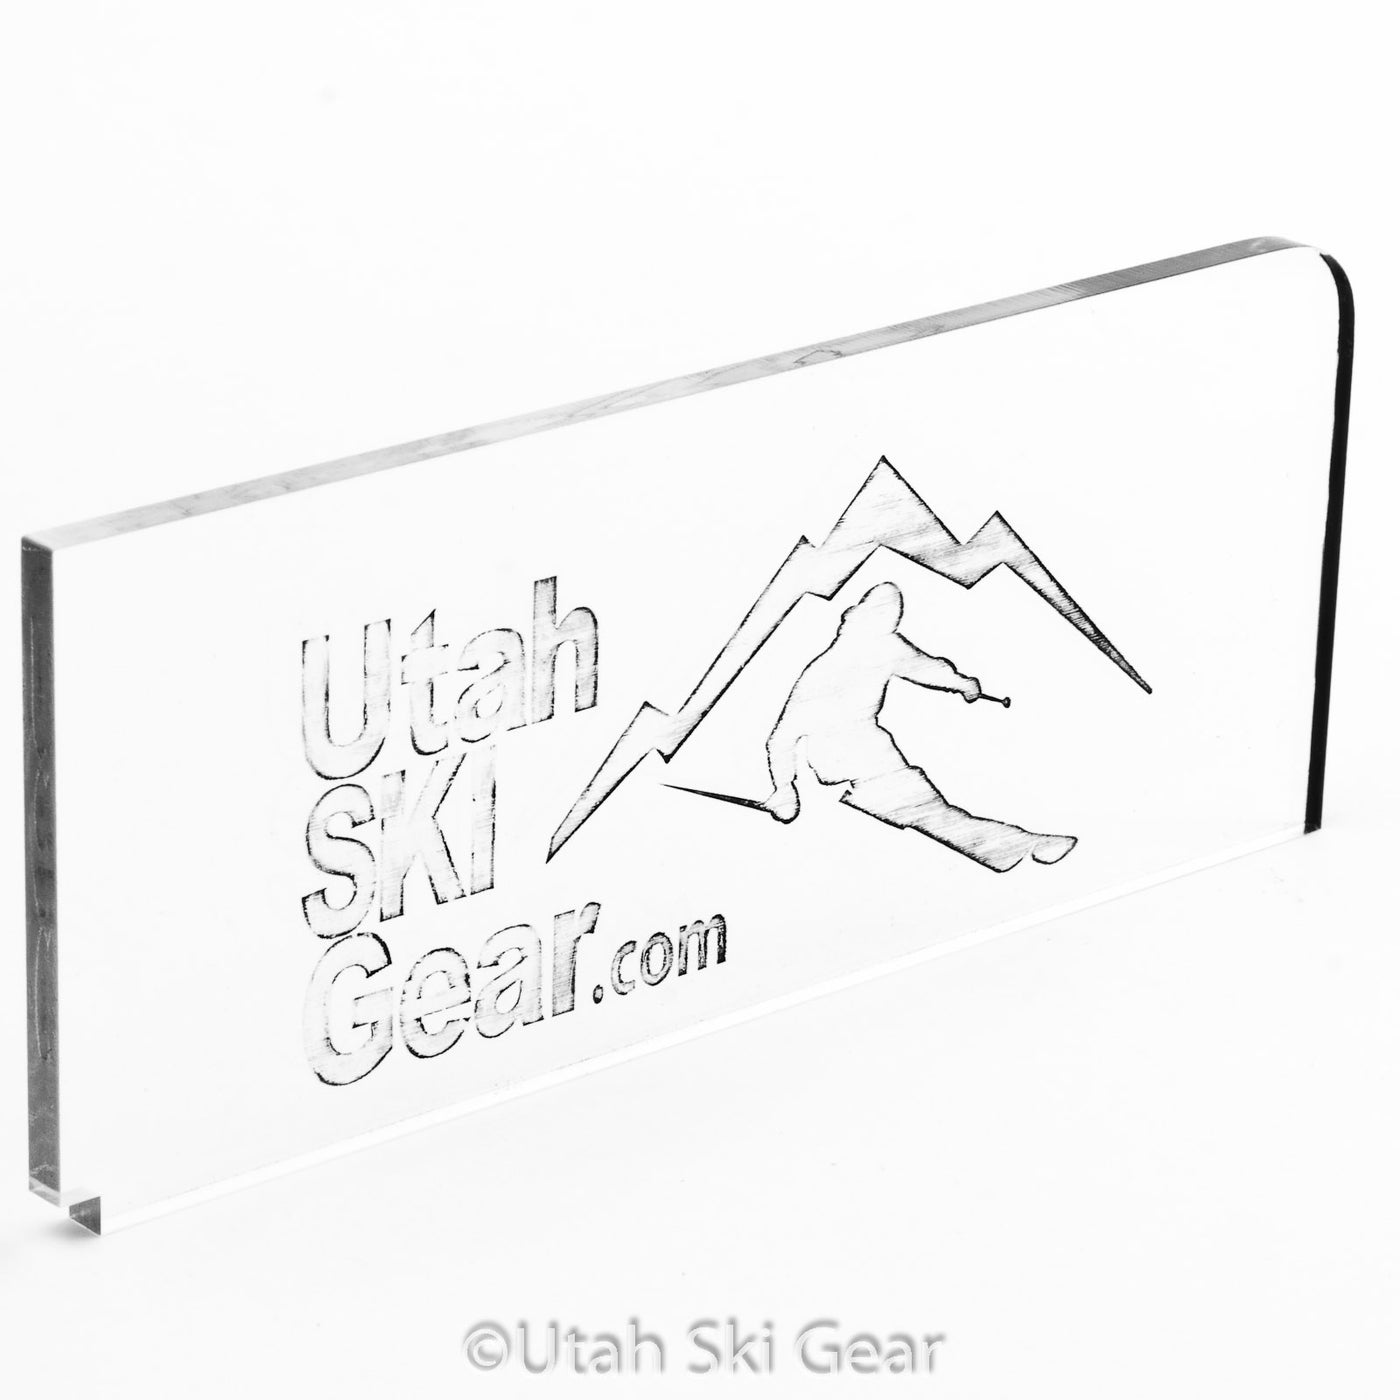 Utah Ski Gear Scraper WAXING TOOLS Utah Ski Gear   